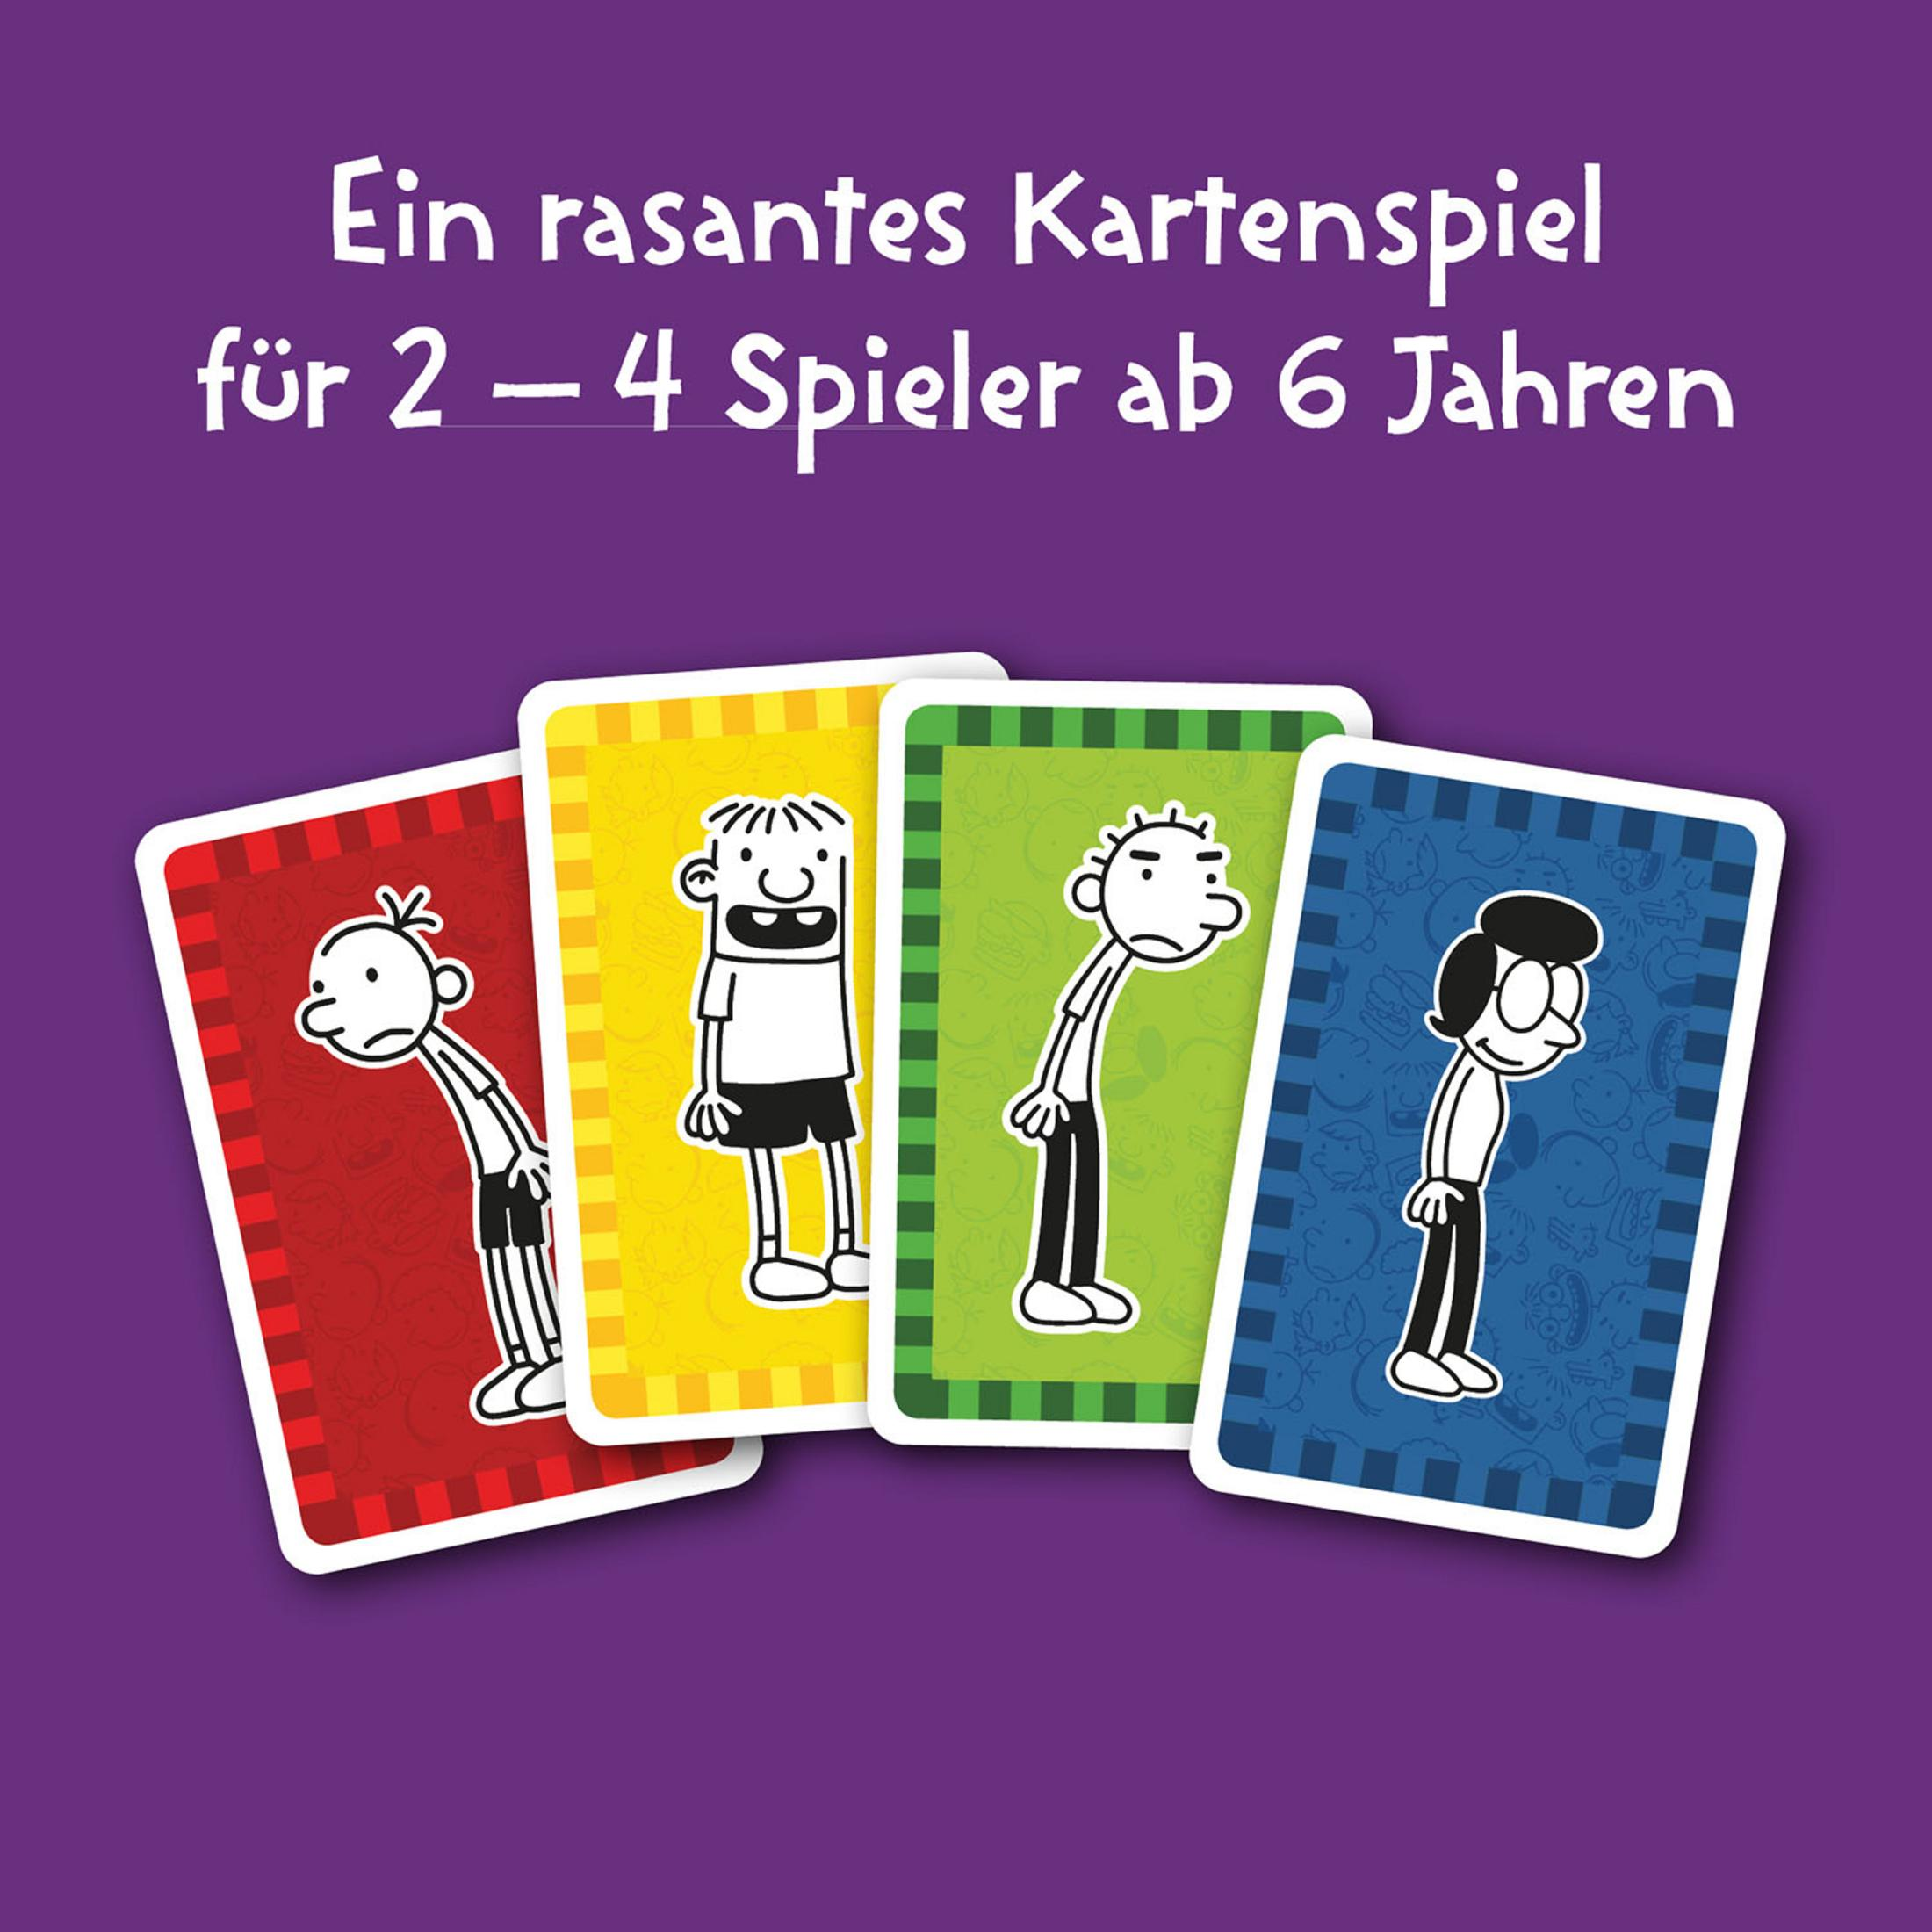 KOSMOS 741747 GREGS Mehrfarbig Kartenspiel TAGEBUCH-SCHWEINEHAUFEN (KARTENSPIEL)